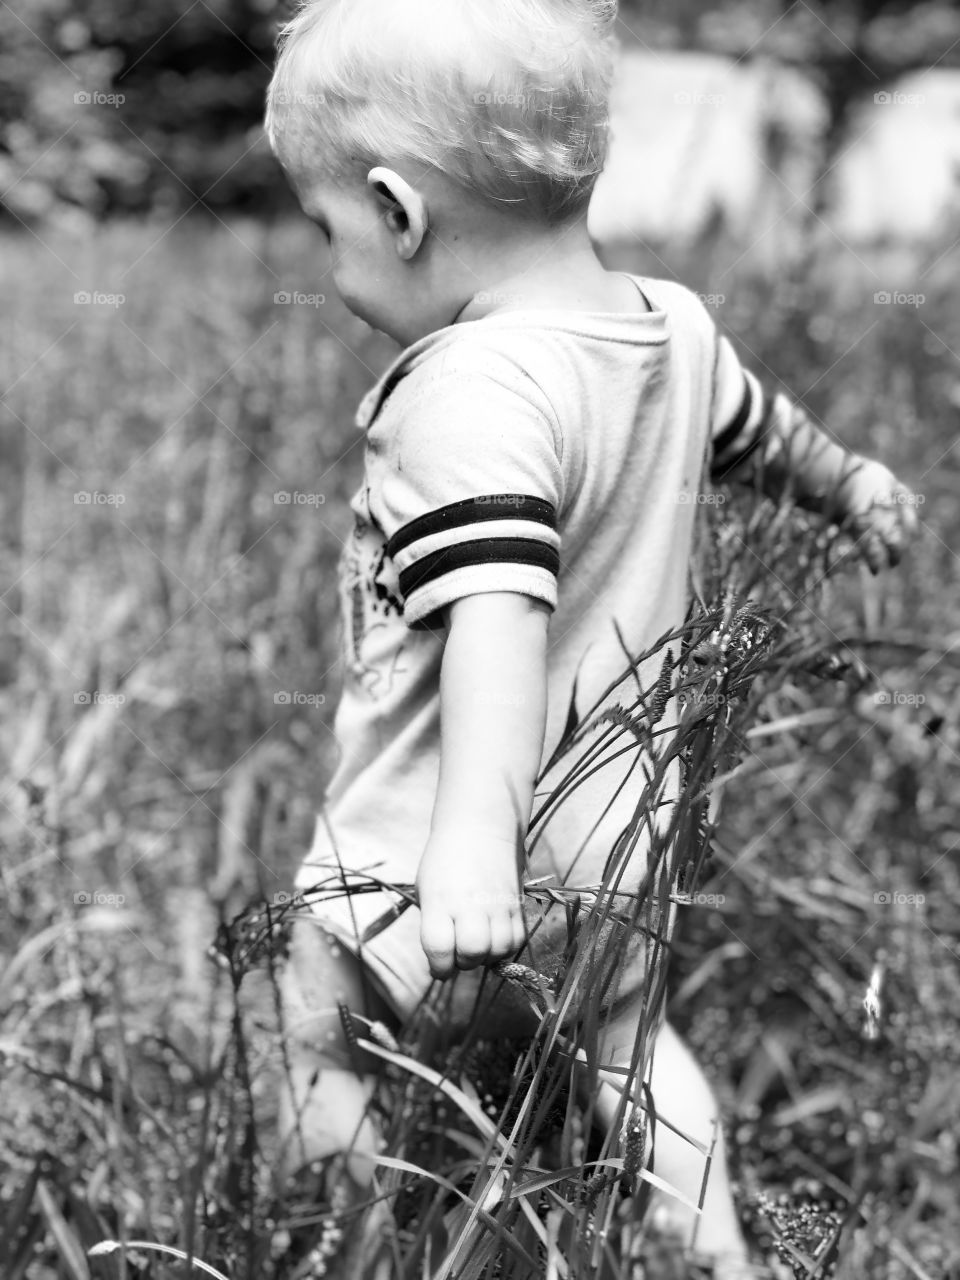 Boy in grass